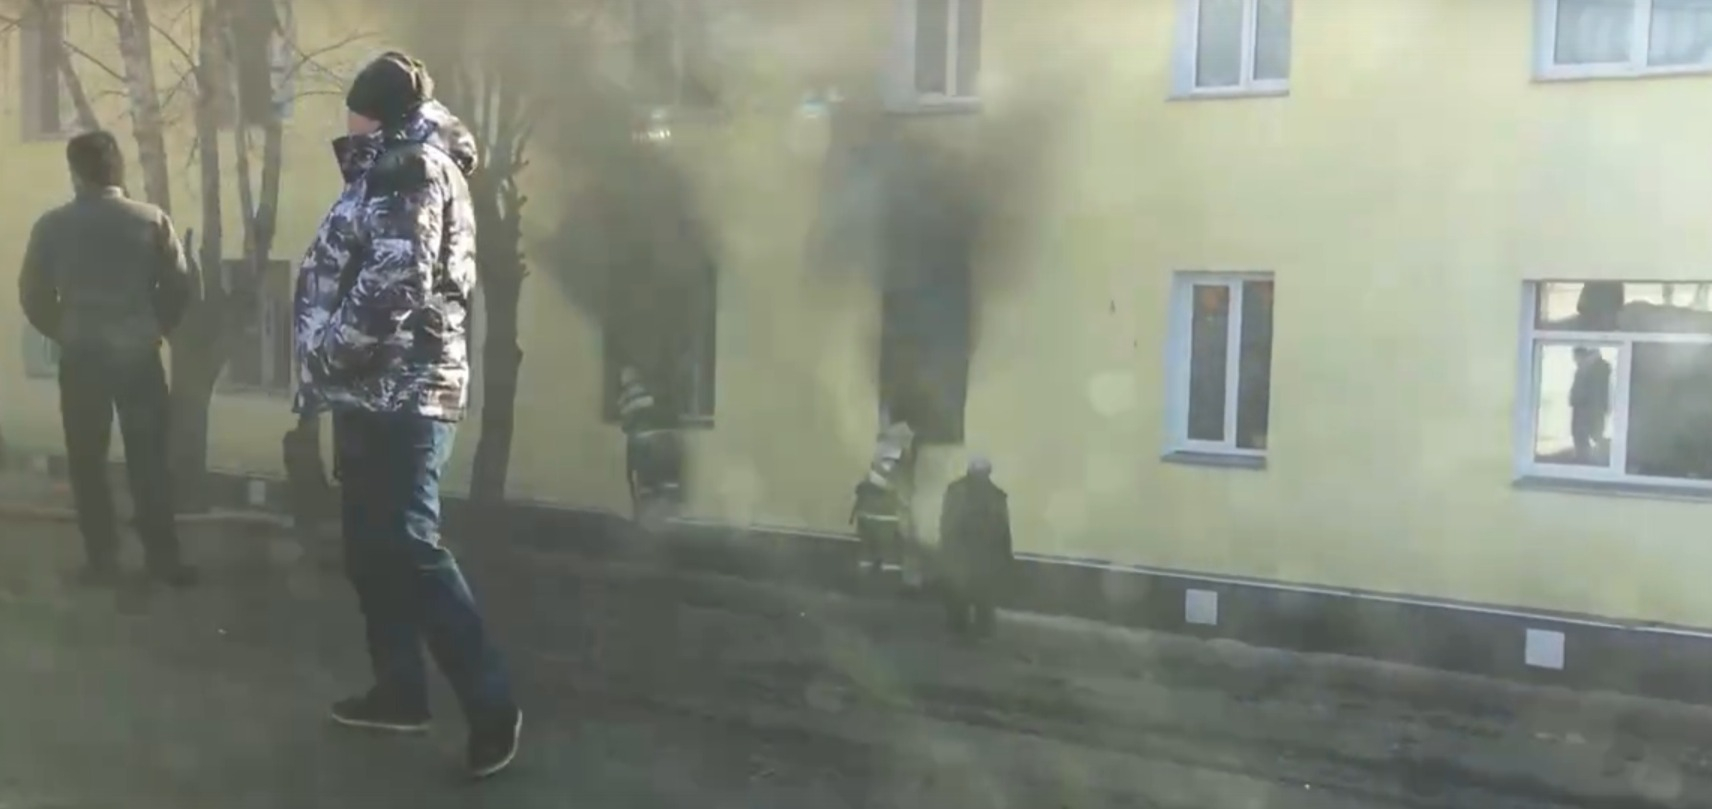 "Ловили племяшек на руки": простые люди спасали детей в пожаре под Ярославлем . Видео